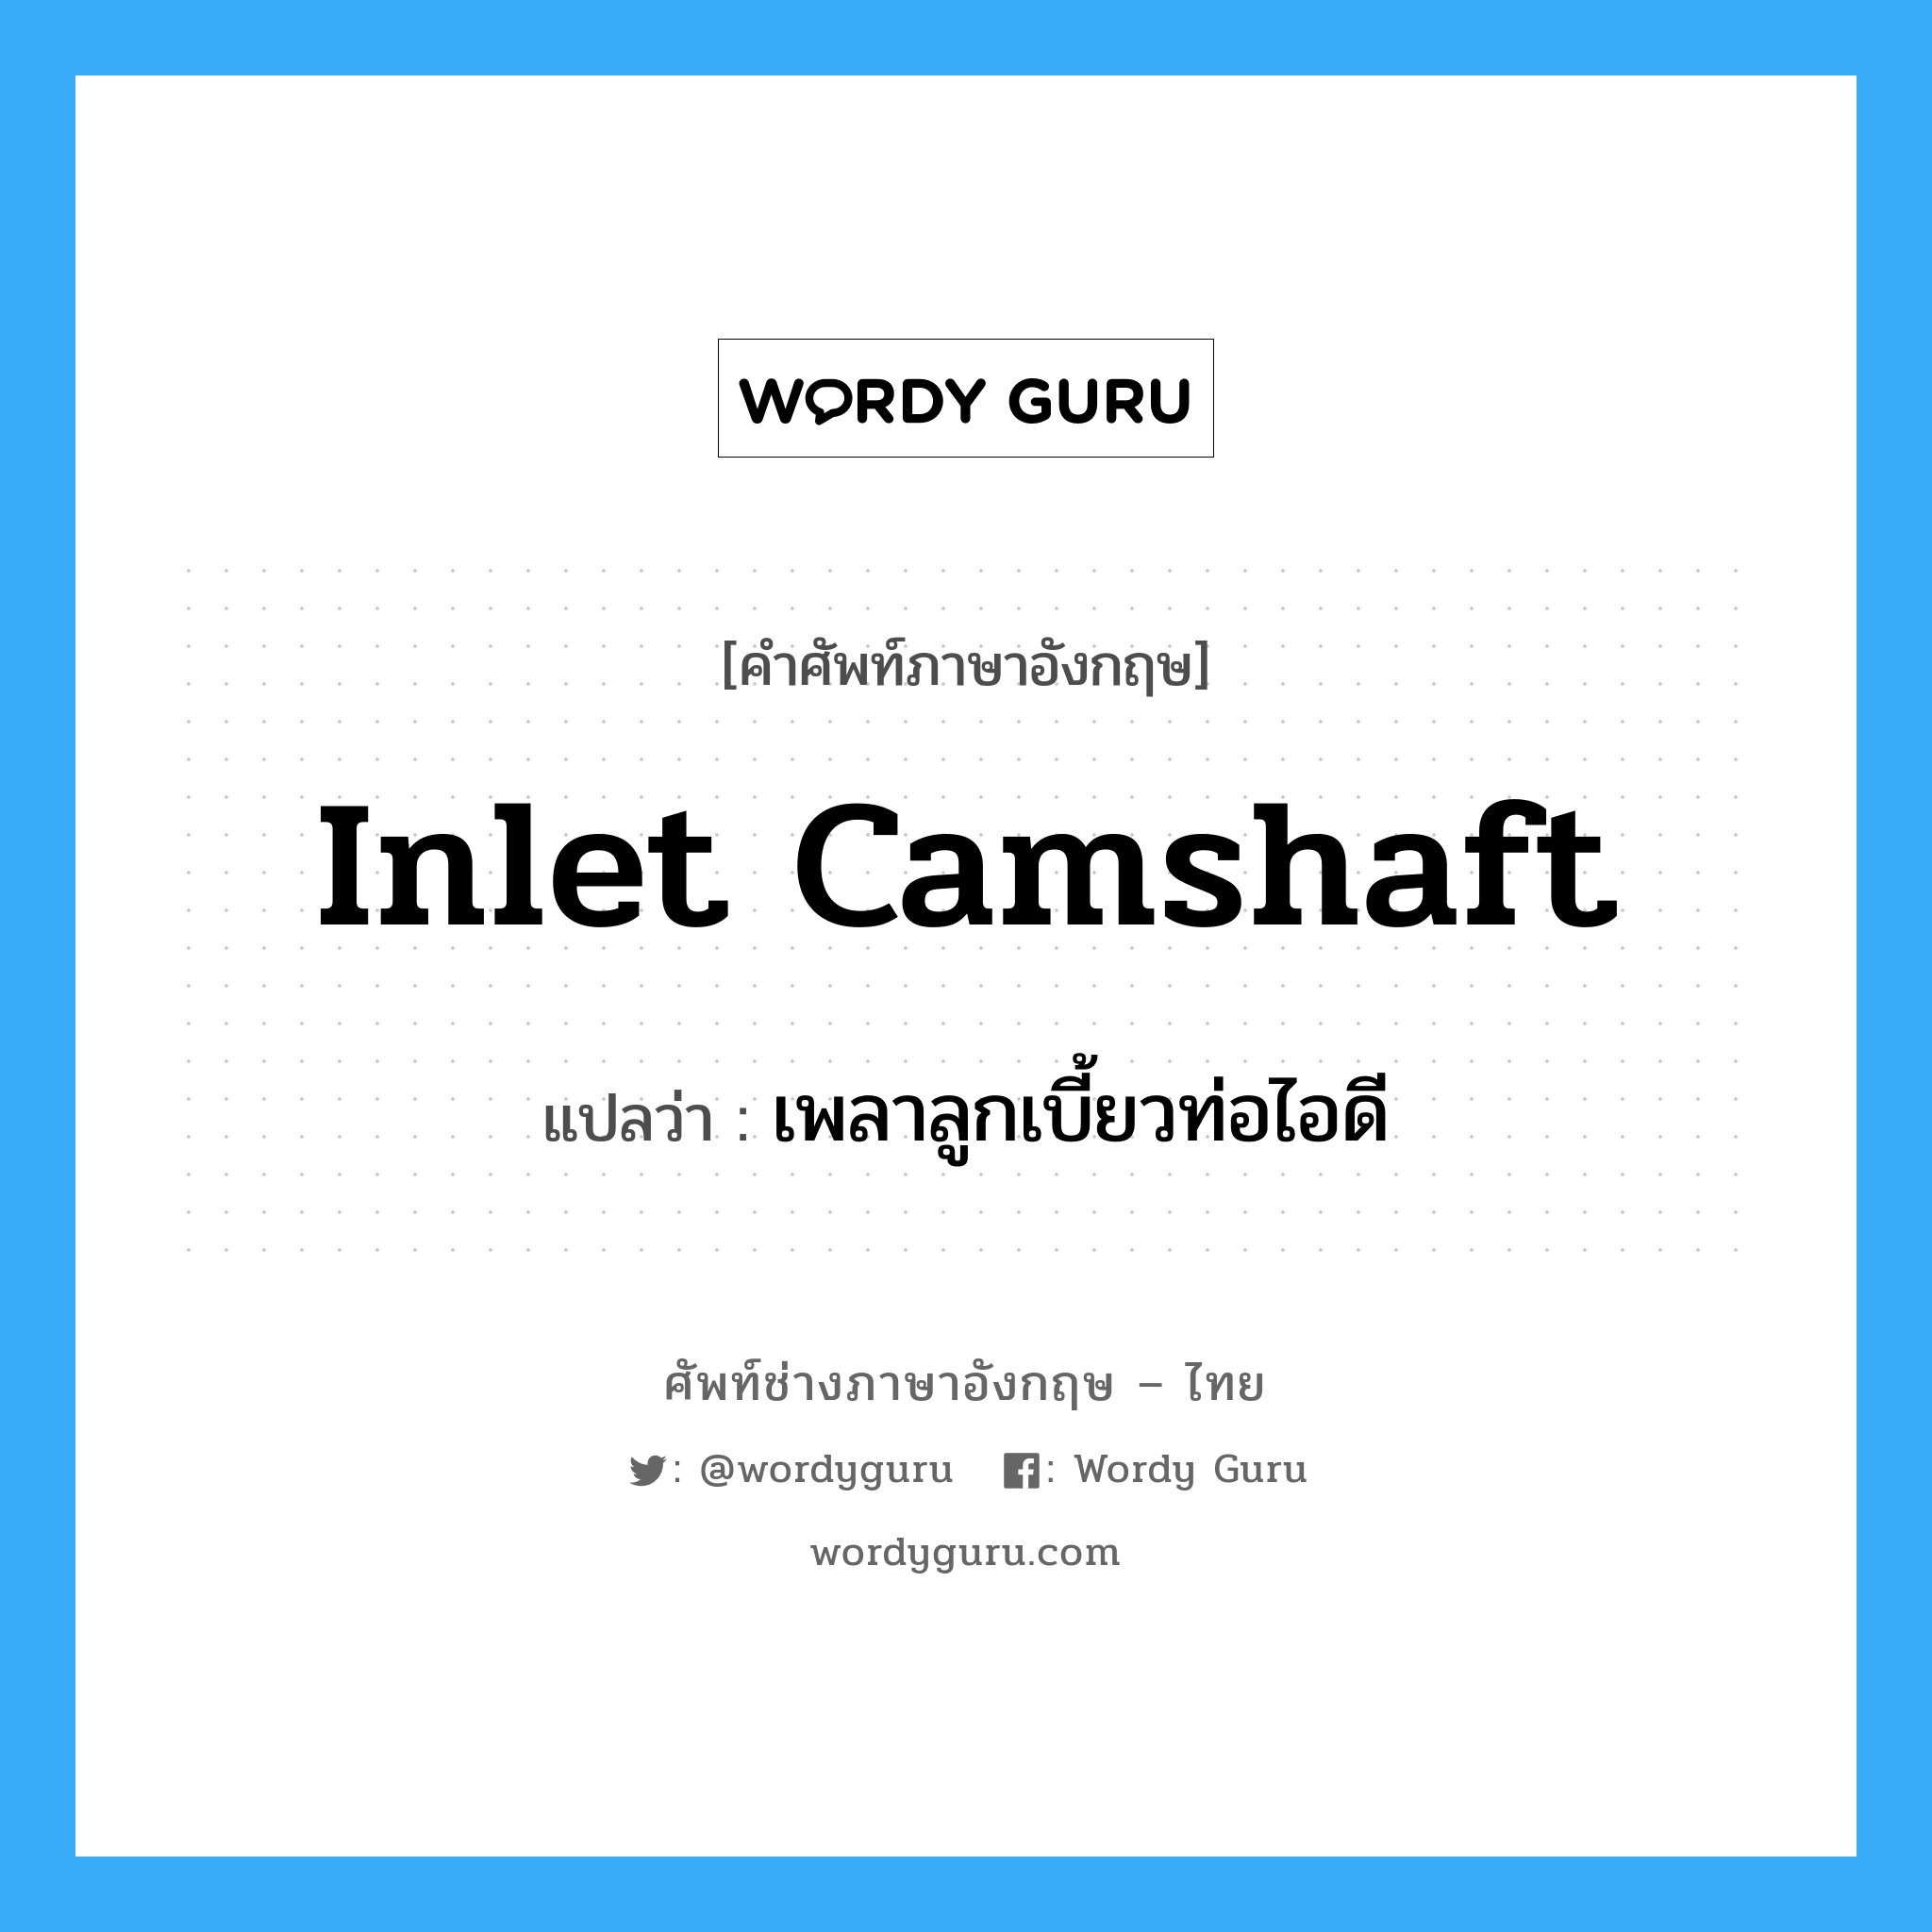 inlet camshaft แปลว่า?, คำศัพท์ช่างภาษาอังกฤษ - ไทย inlet camshaft คำศัพท์ภาษาอังกฤษ inlet camshaft แปลว่า เพลาลูกเบี้ยวท่อไอดี